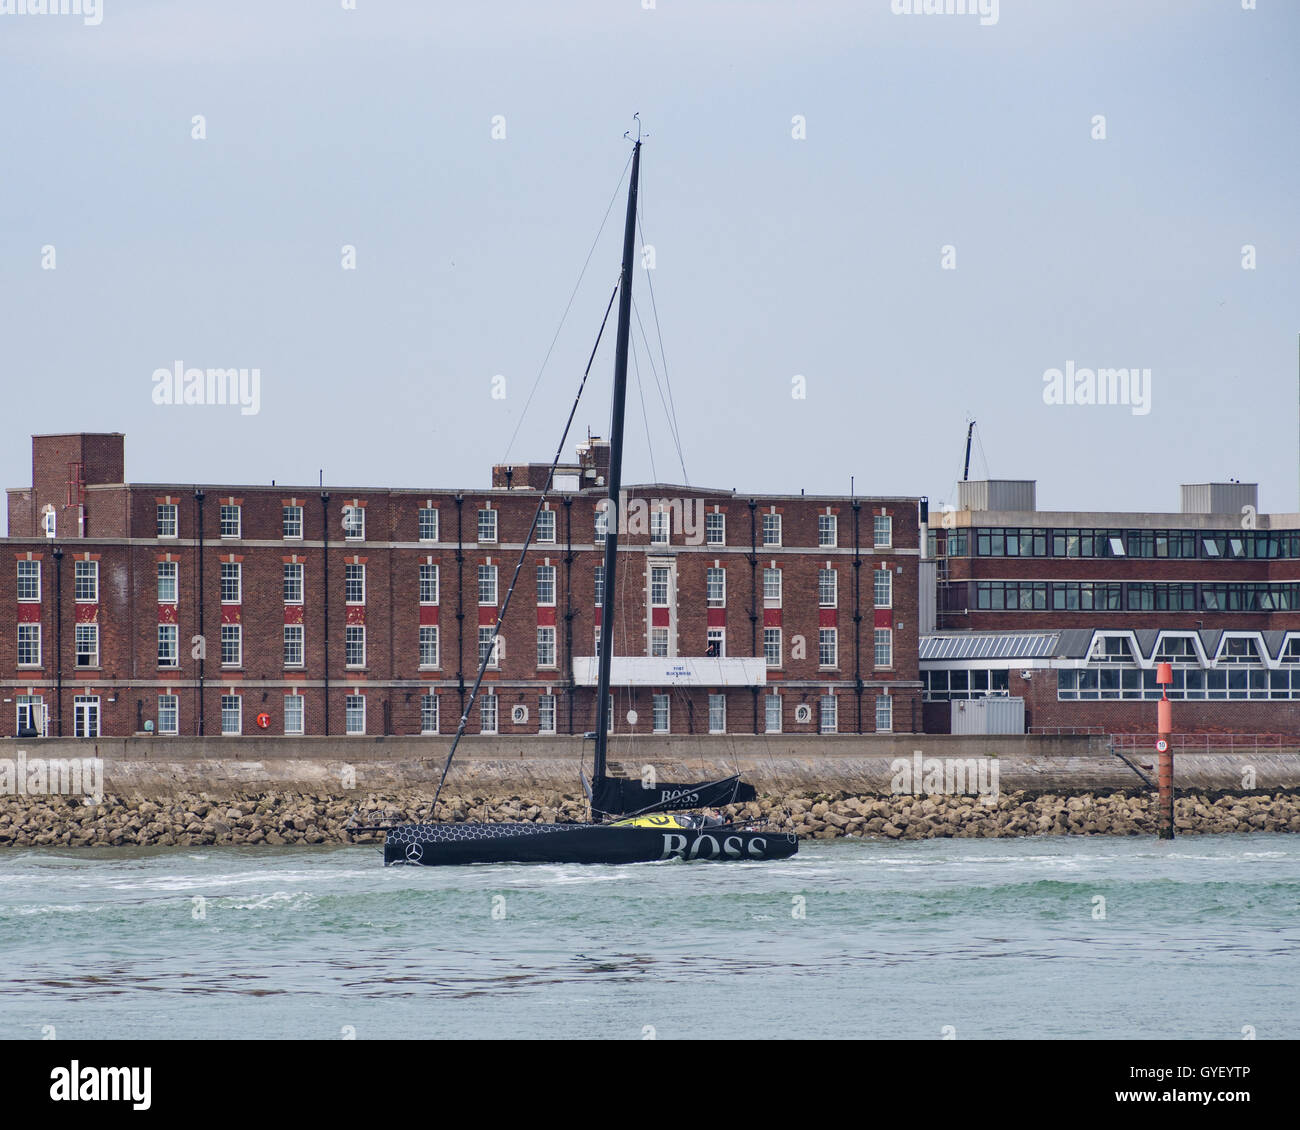 Alex Thomson racing course IMOCA 60 yacht de quitter le port de Portsmouth, Angleterre Banque D'Images